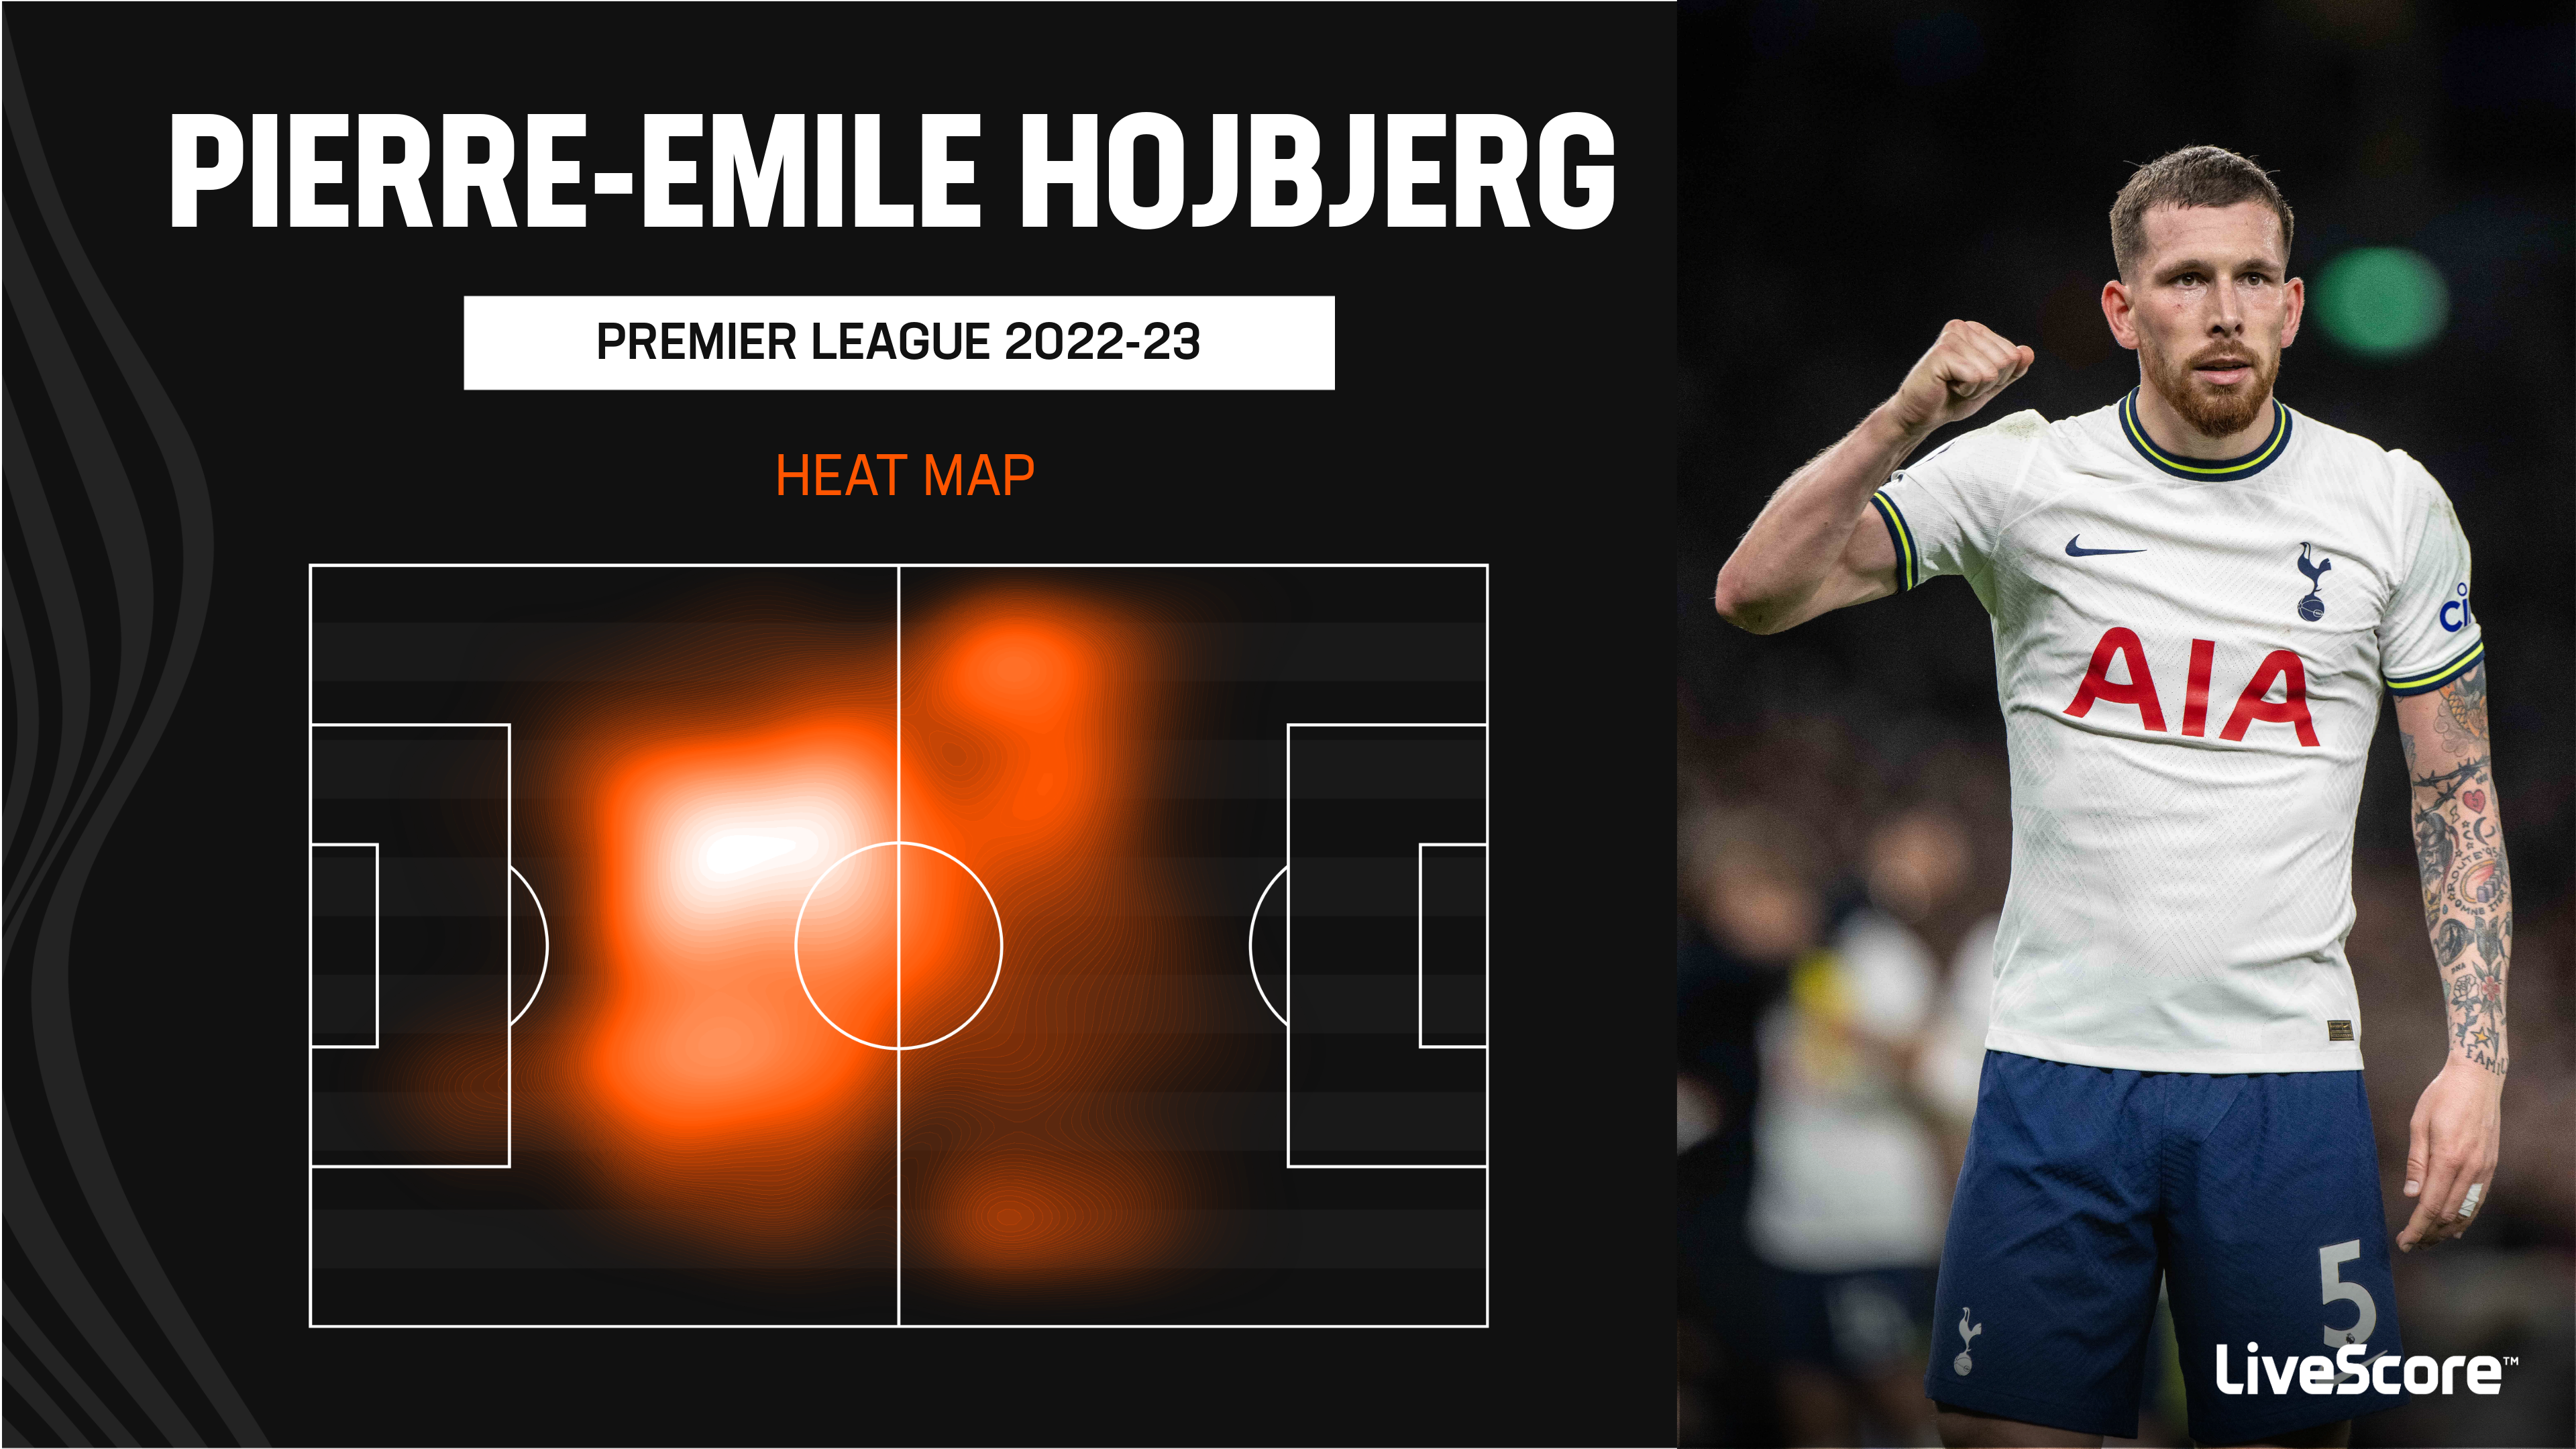 Premier League 2022-23: Harry Kane, Pierre-Emile Hojbjerg Score As